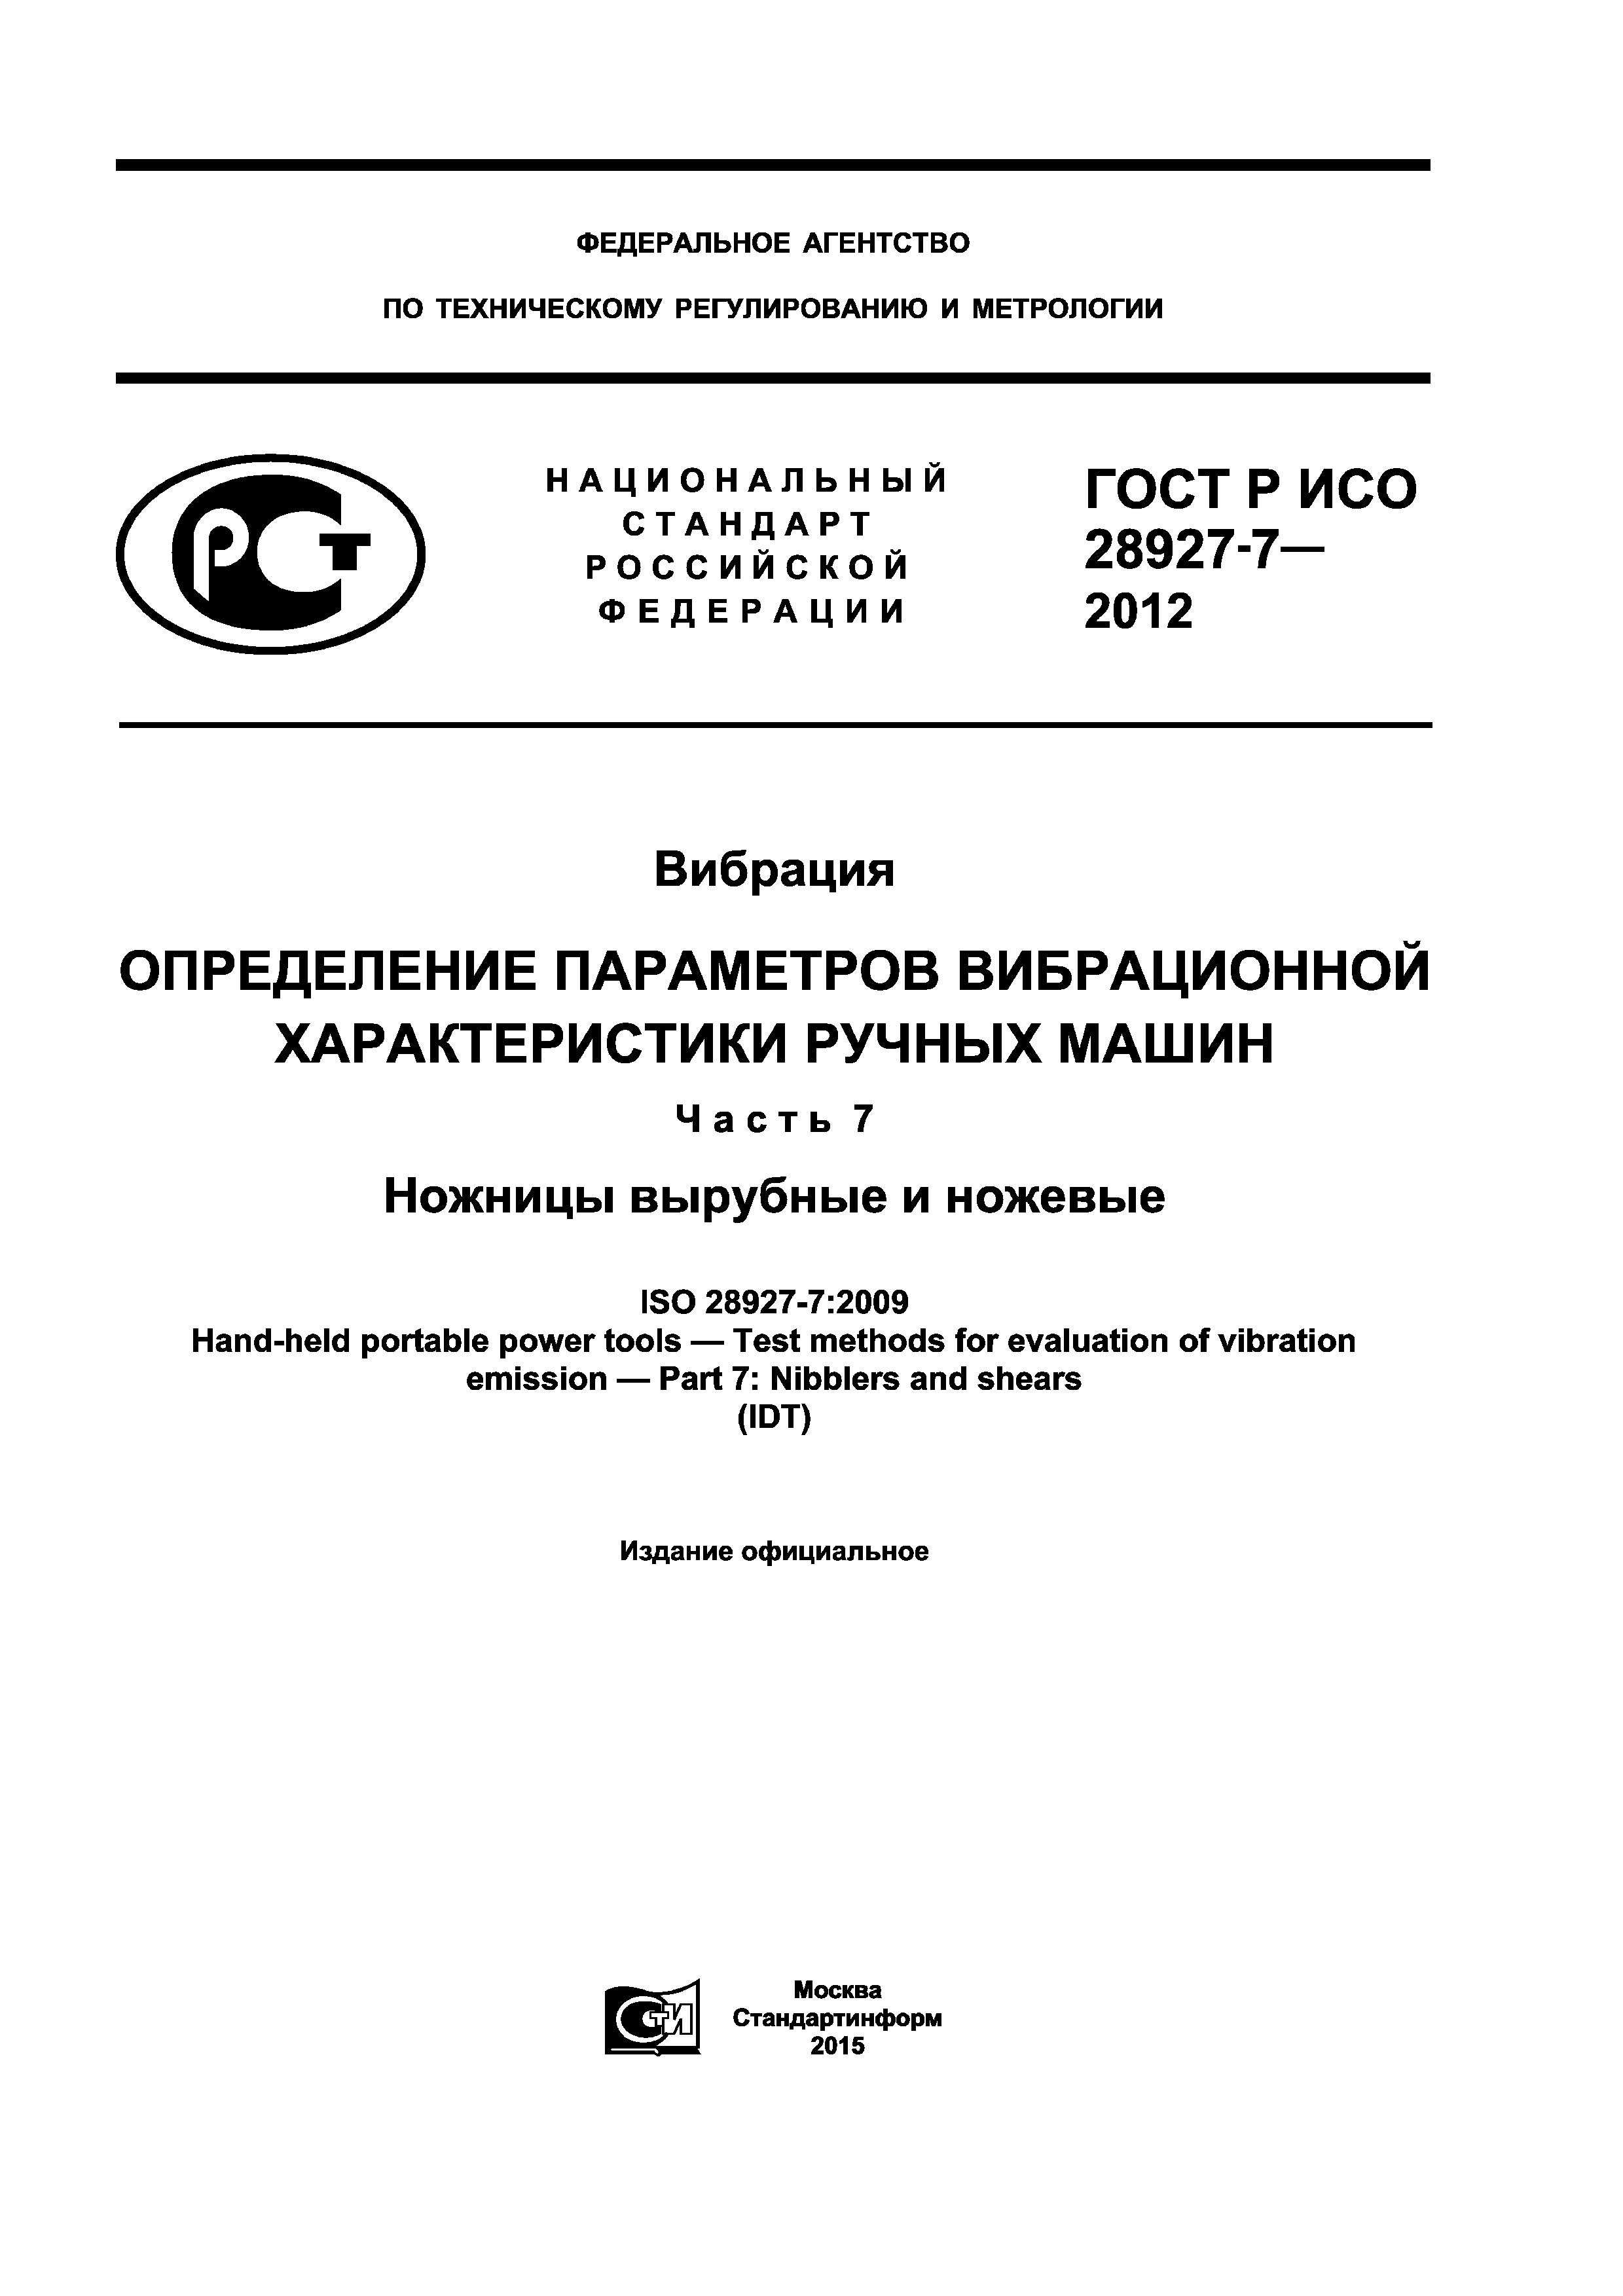 ГОСТ Р ИСО 28927-7-2012